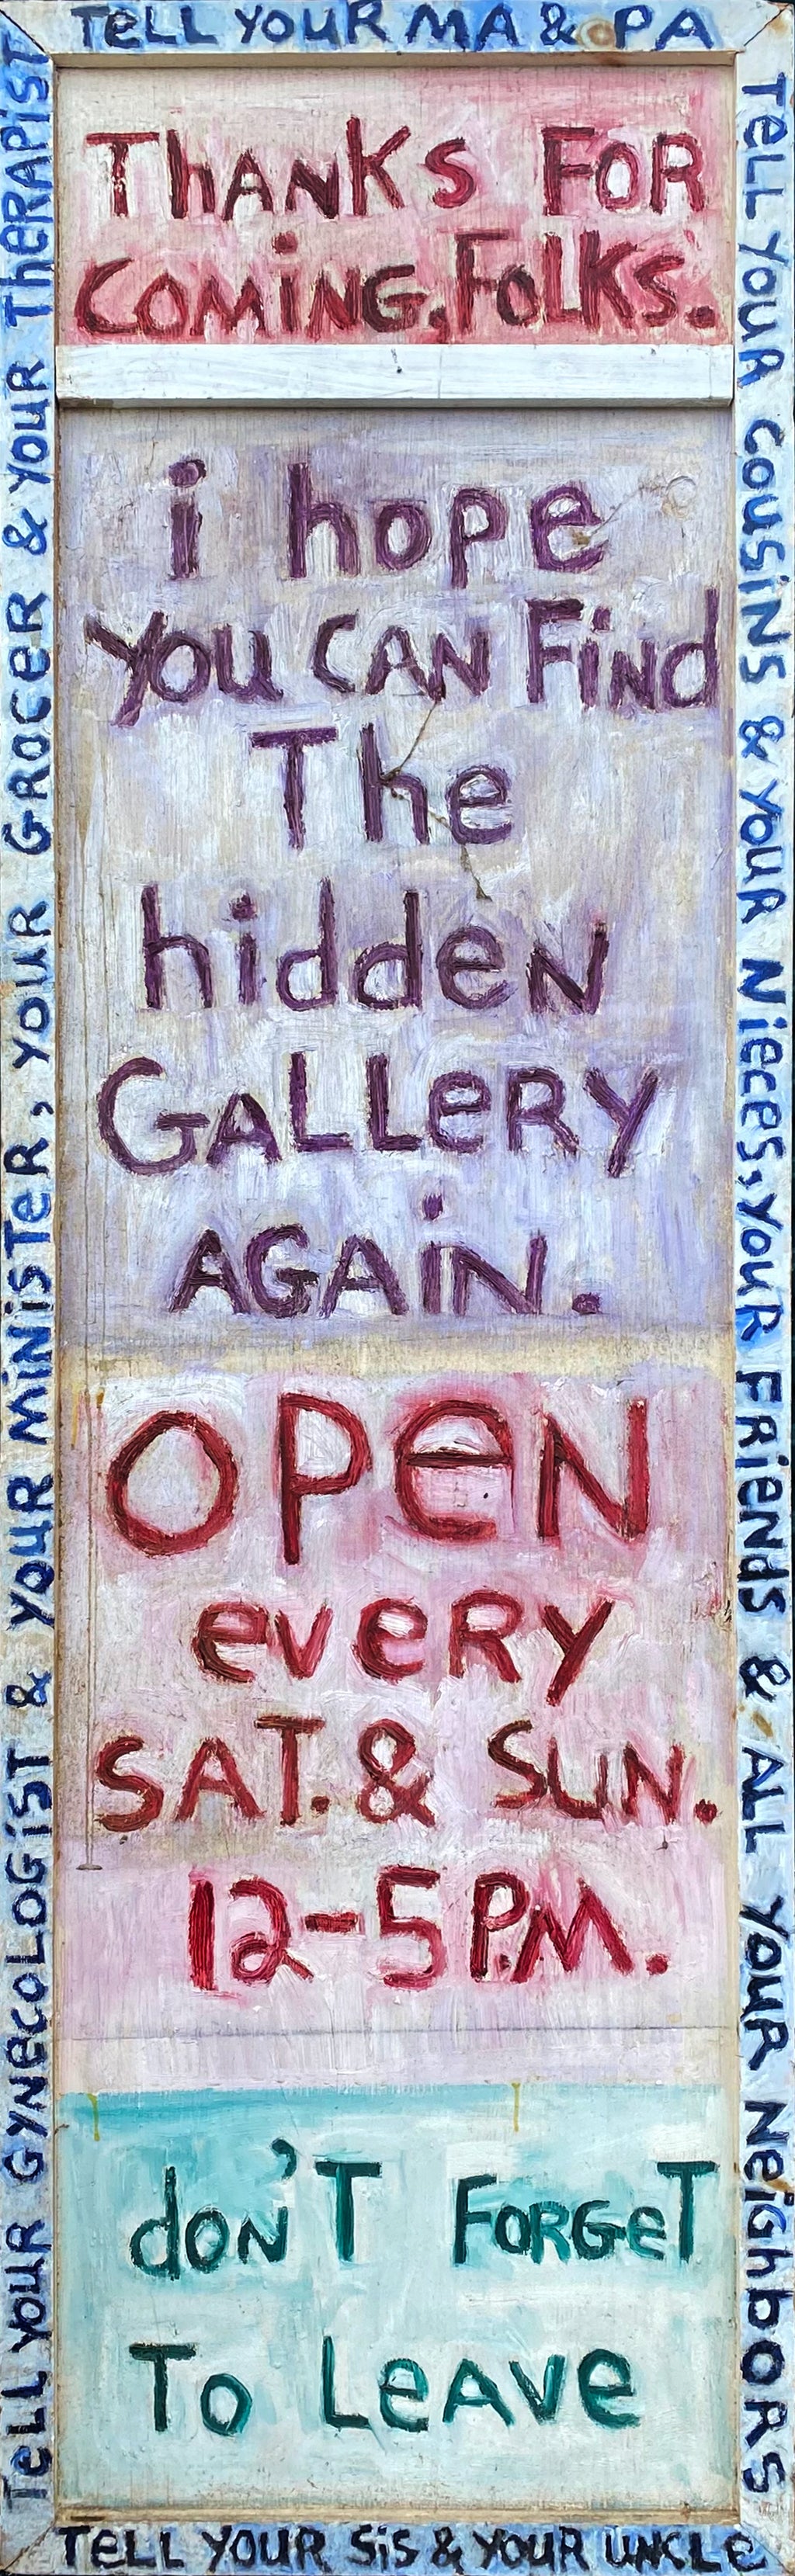 Hidden Gallery - 82 x 24 Oil on Board